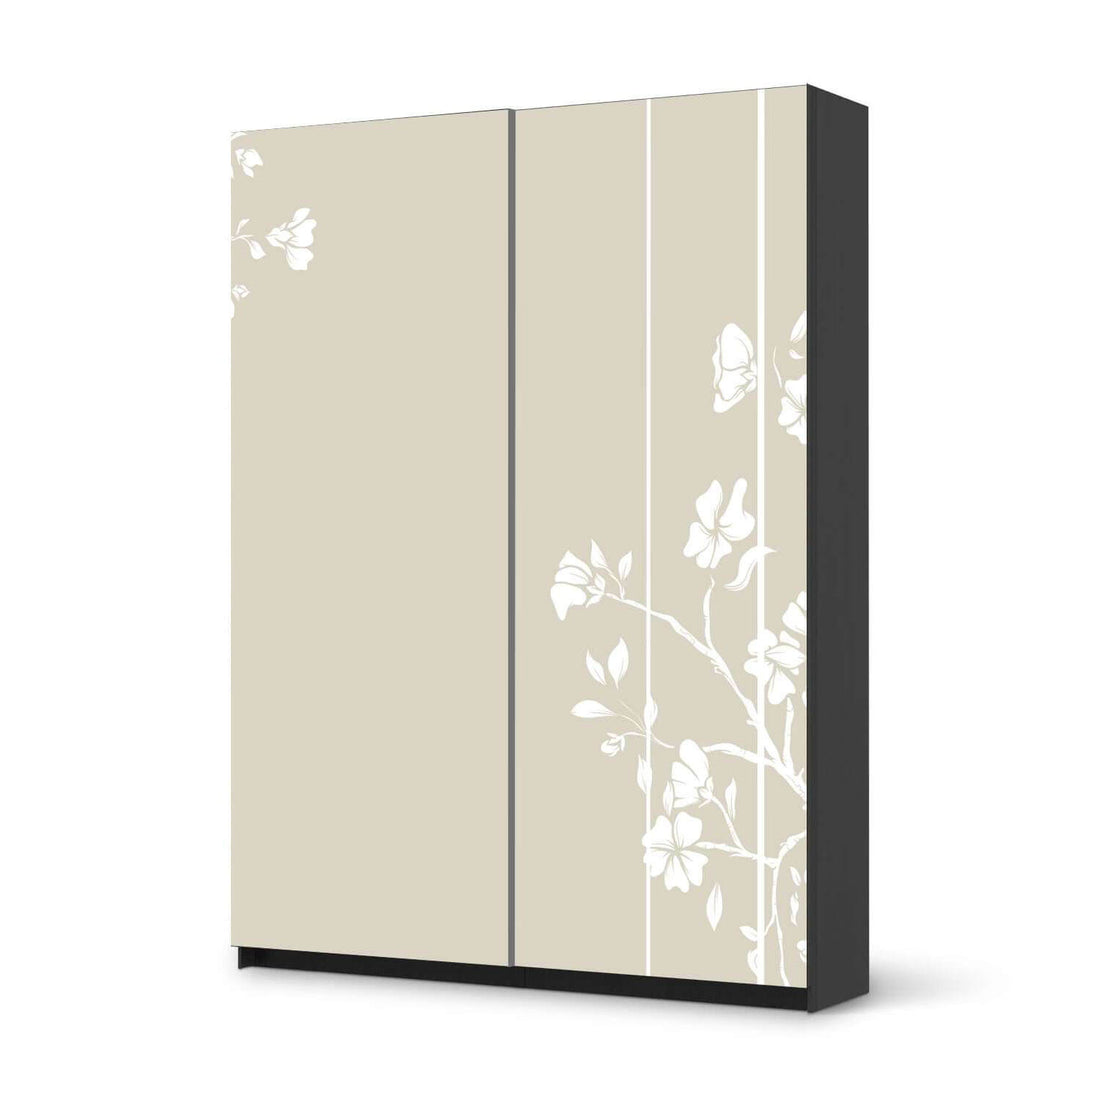 Möbel Klebefolie Florals Plain 3 - IKEA Pax Schrank 201 cm Höhe - Schiebetür 75 cm - schwarz